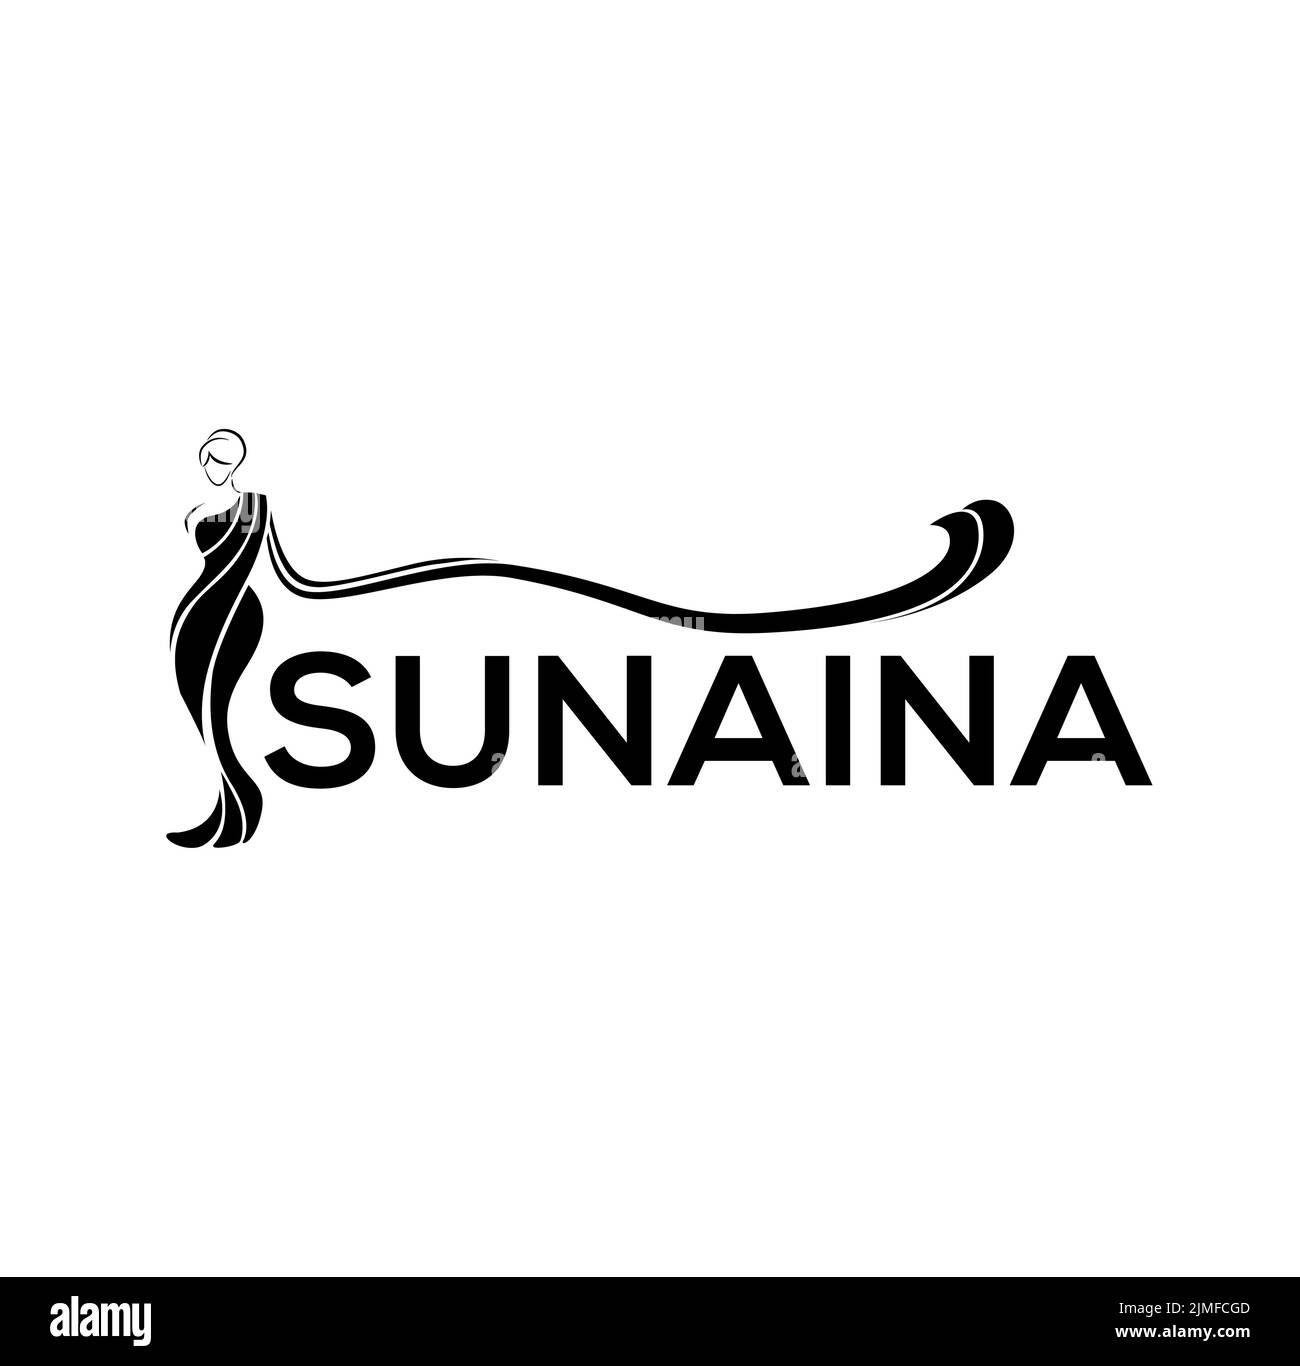 Sunaina (an Indian woman's name that means women with beautiful eyes) saree shop monogram. Sunaina saree shop logo. Stock Vector